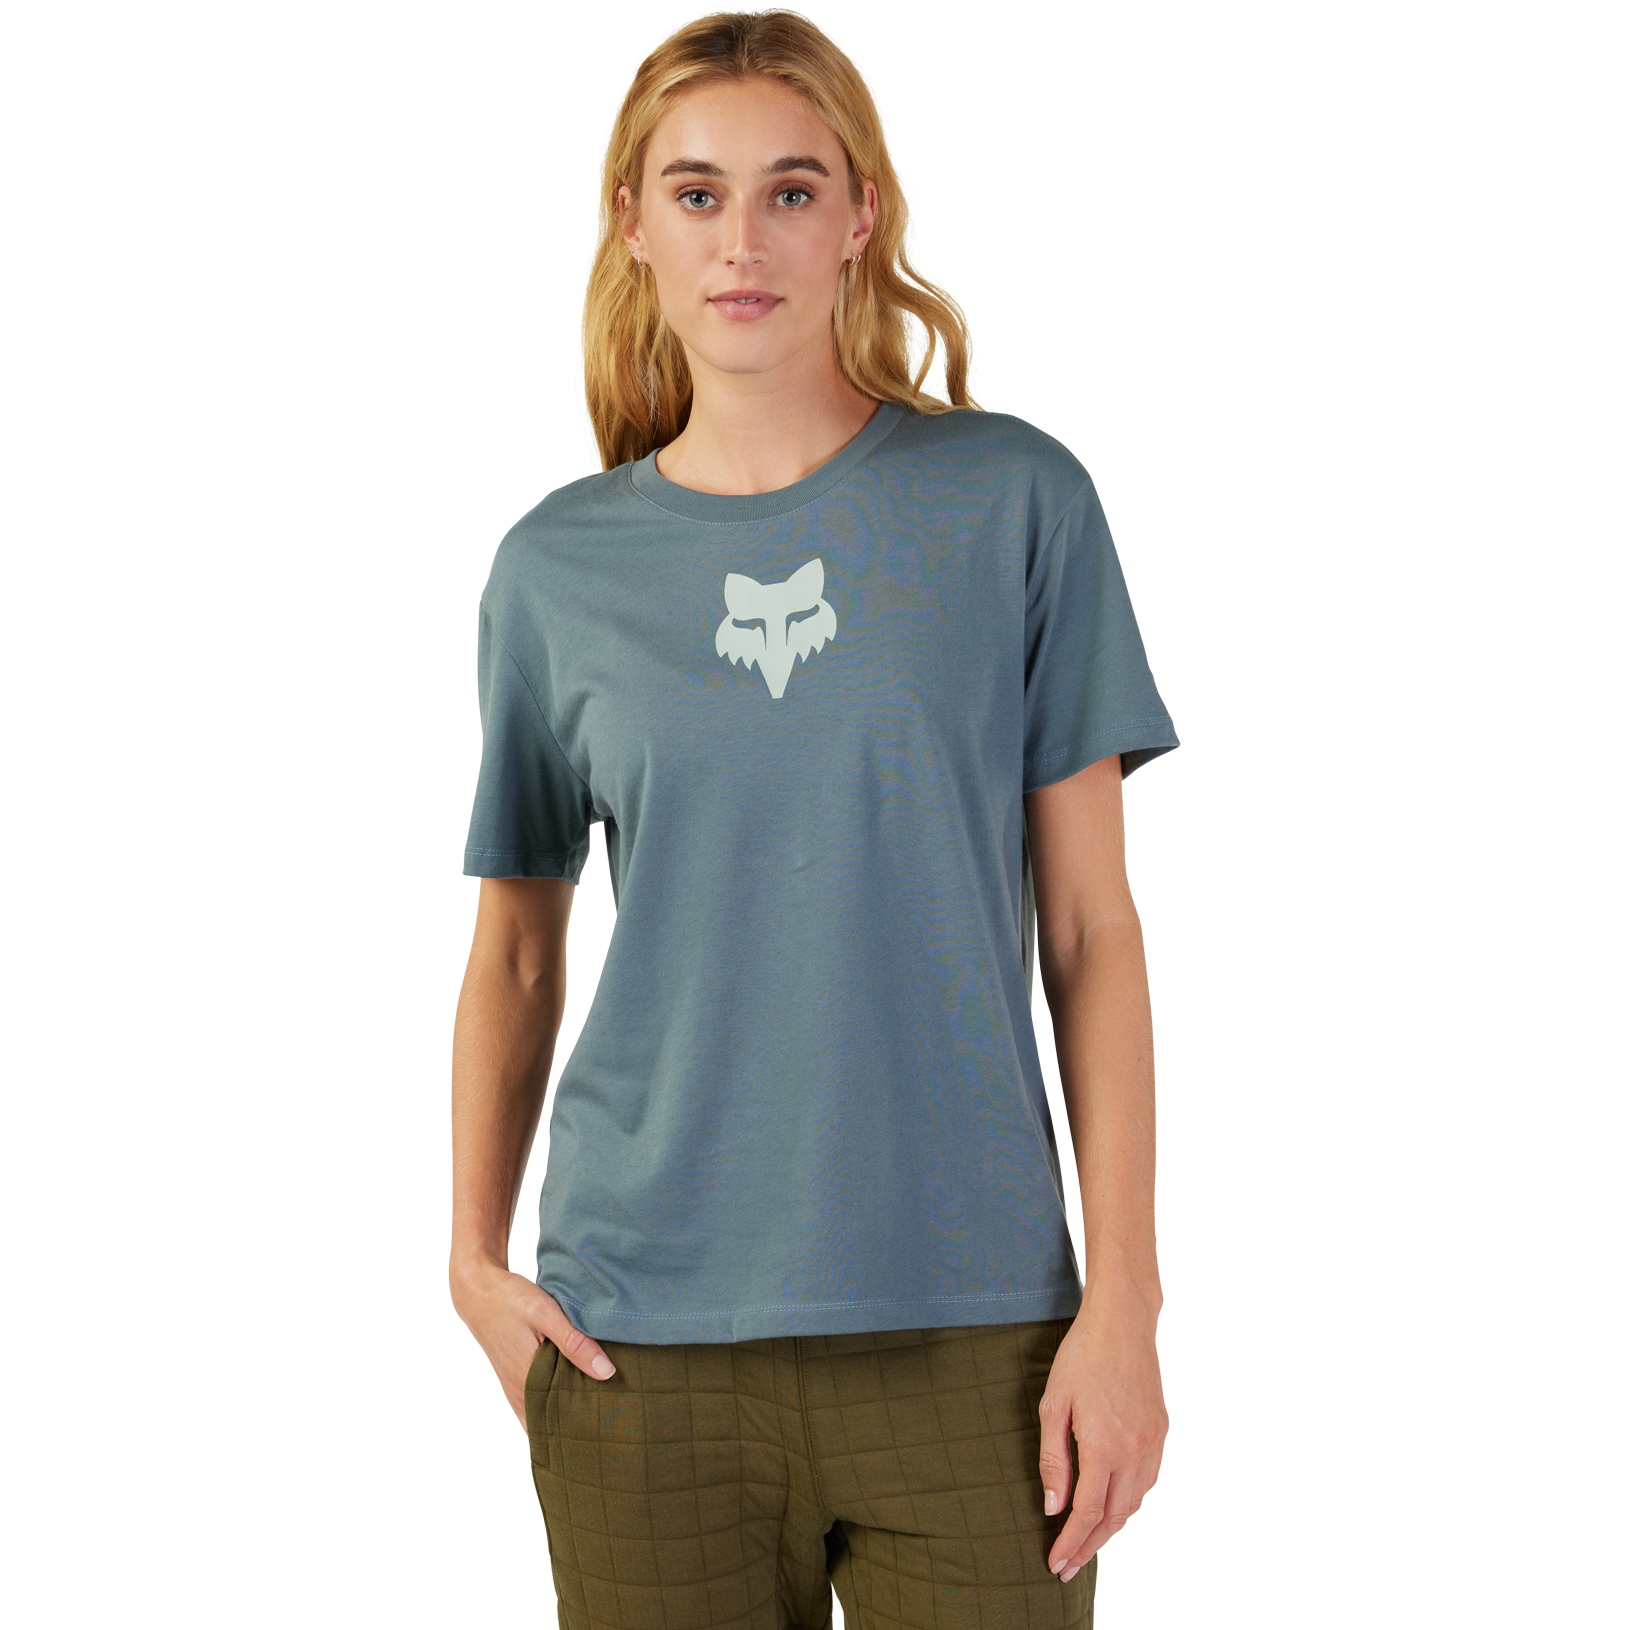 Produktbild von FOX Head T-Shirt Damen - citadel